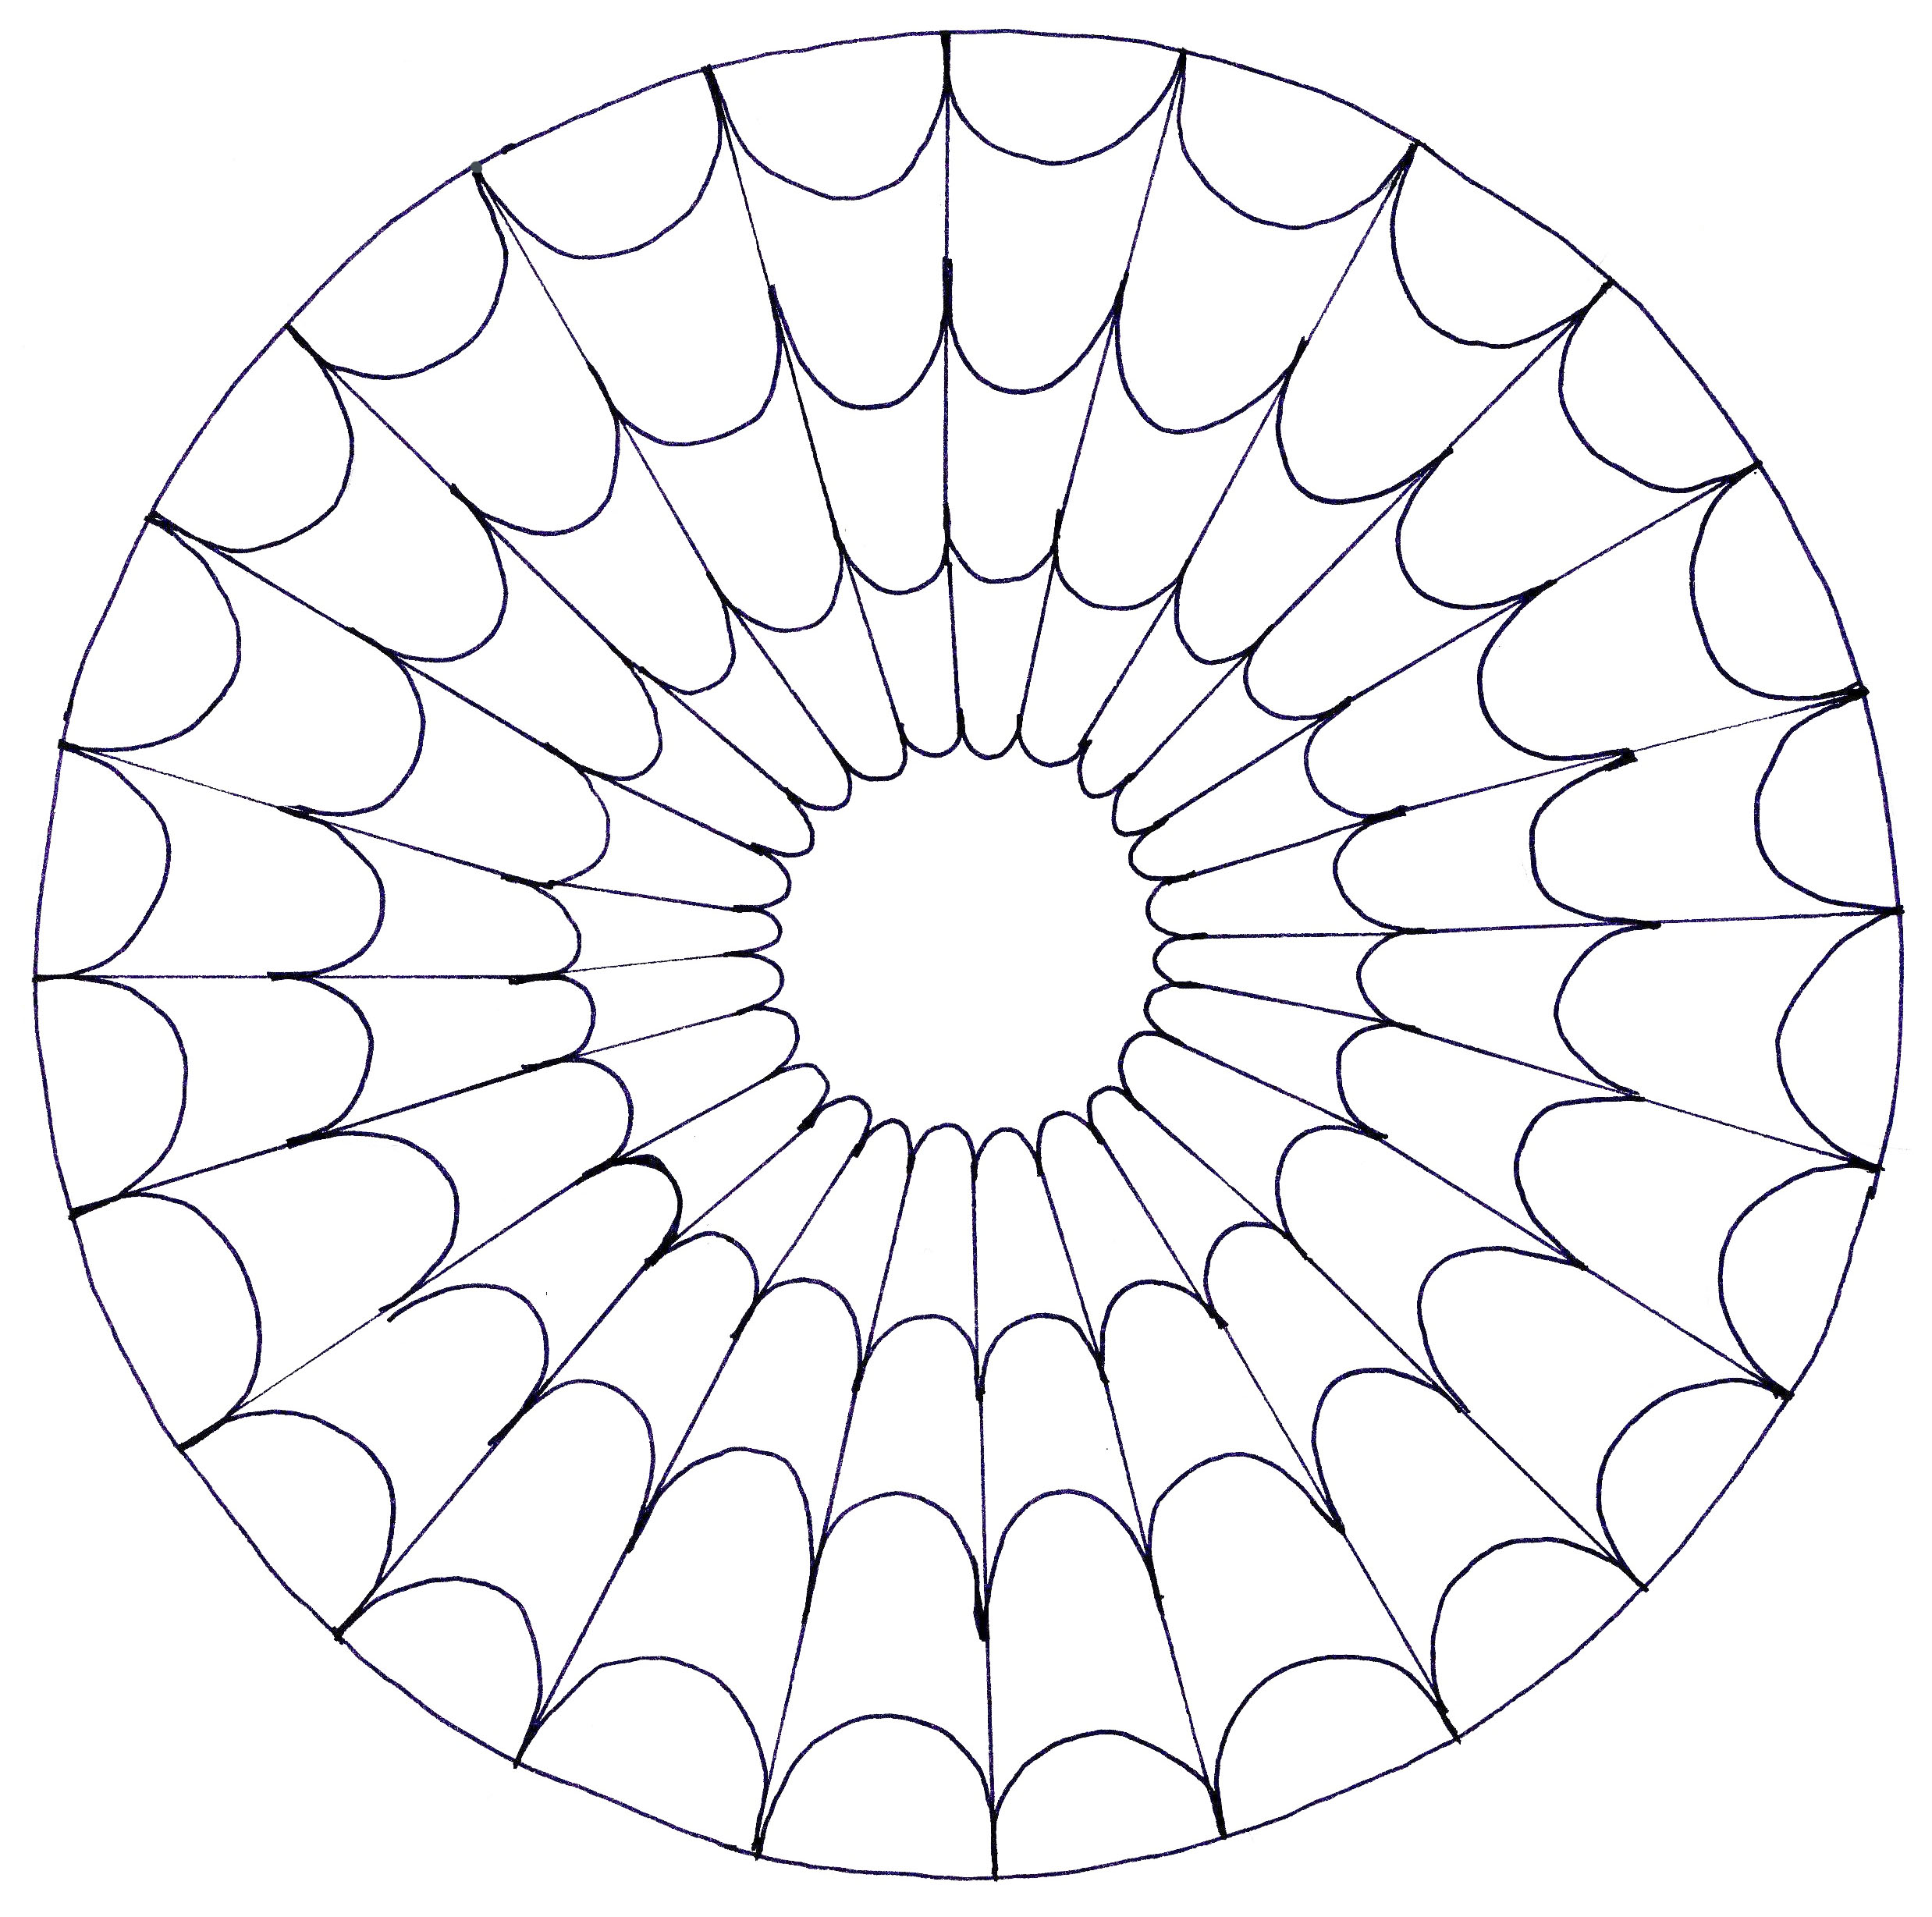 Un Mandala parfait ressemblant à une toile d'araignée, si vous avez envie de simplicité ou que vous disposez de peu de temps pour colorier.